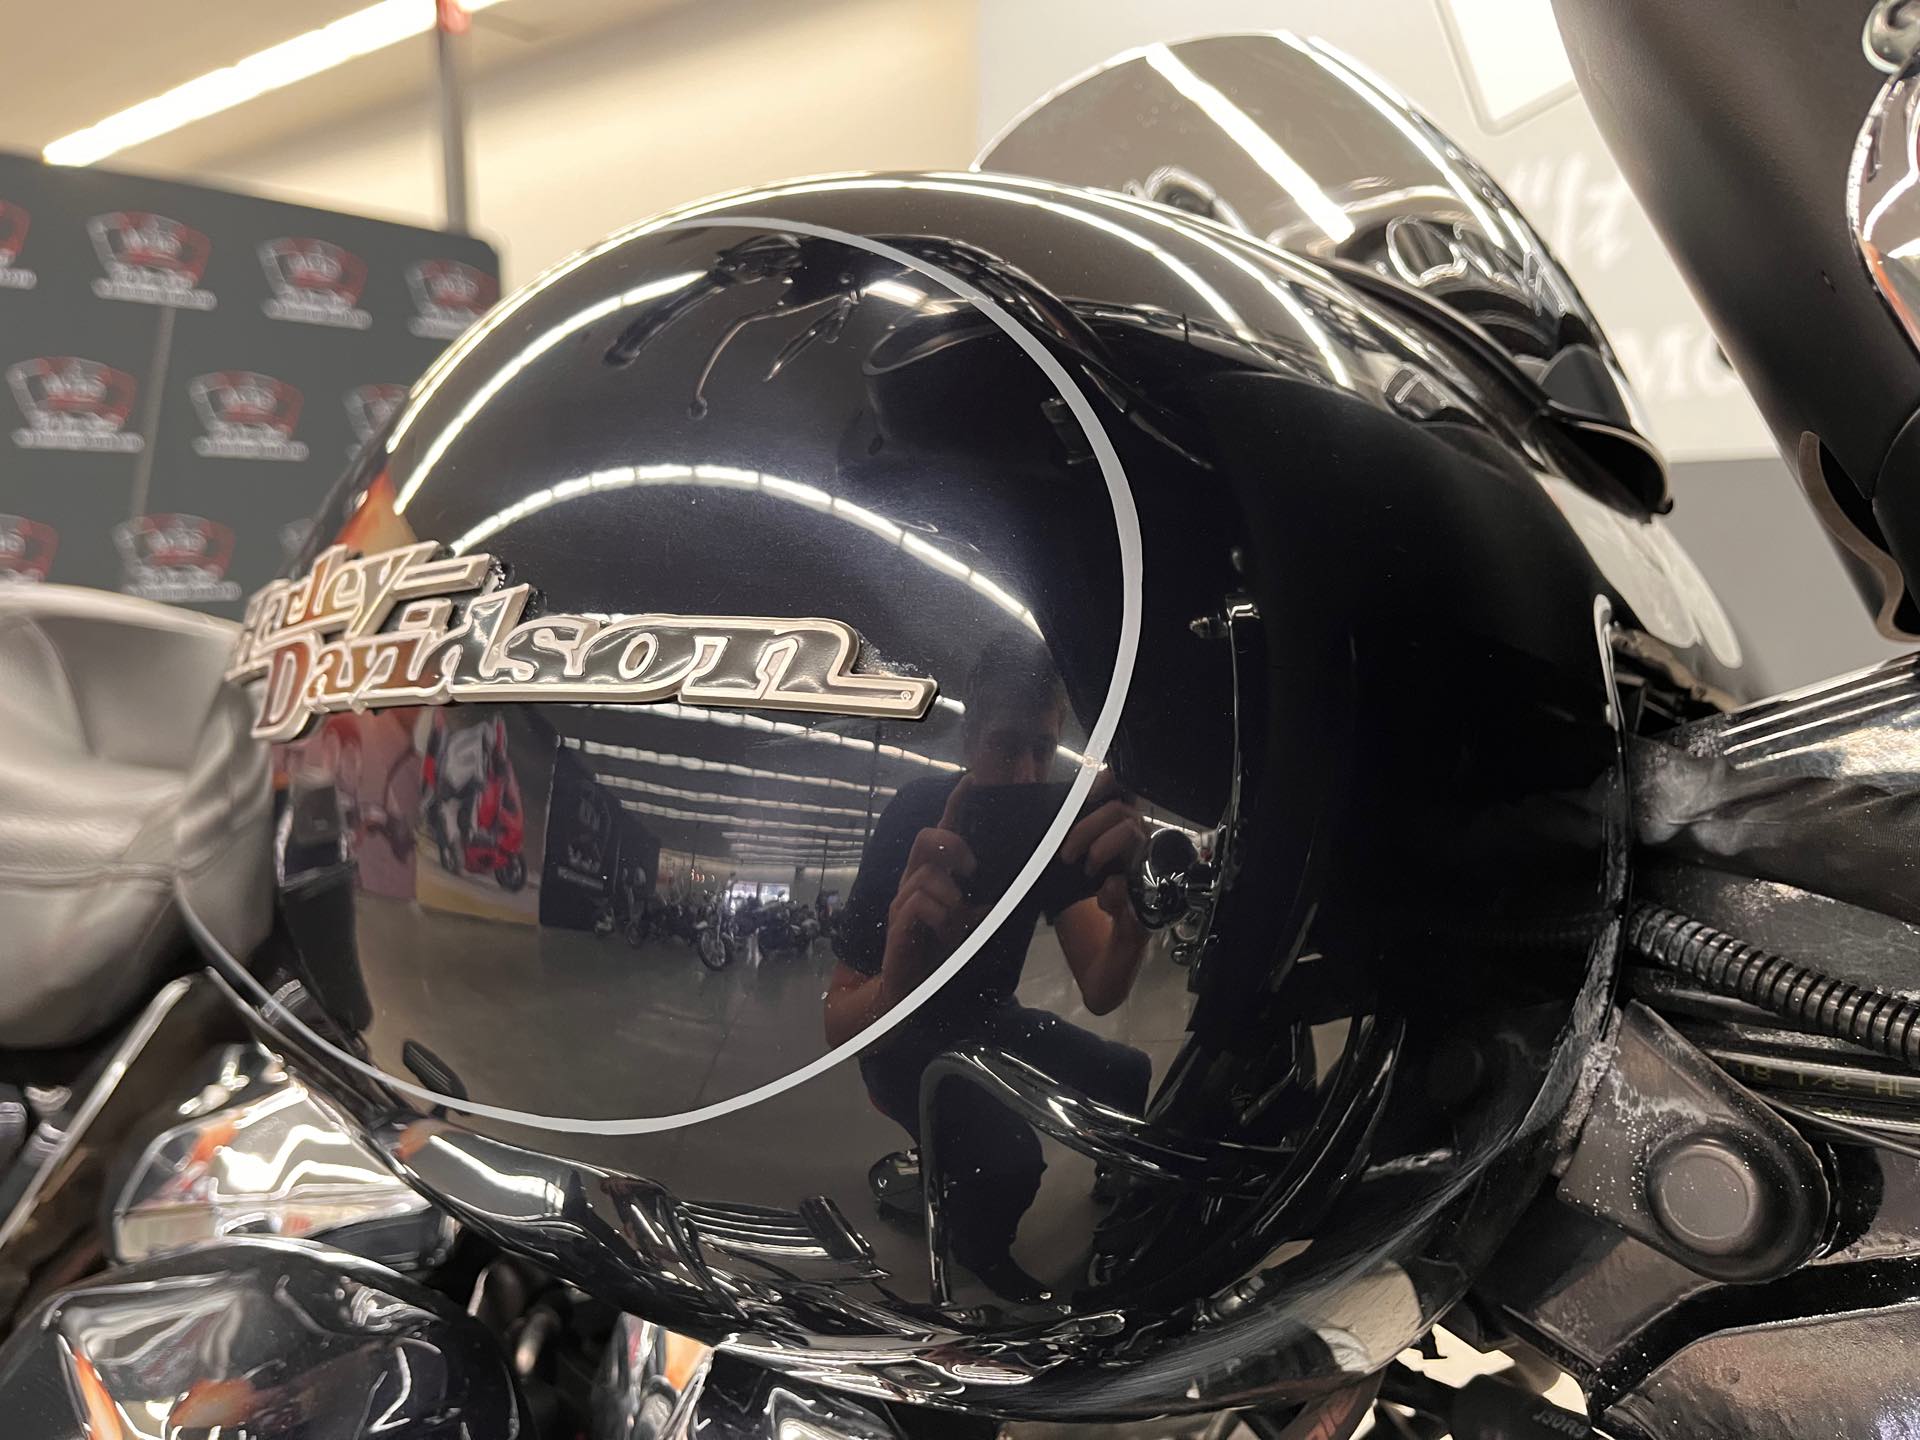 2019 Harley-Davidson Street Glide Base at Aces Motorcycles - Denver